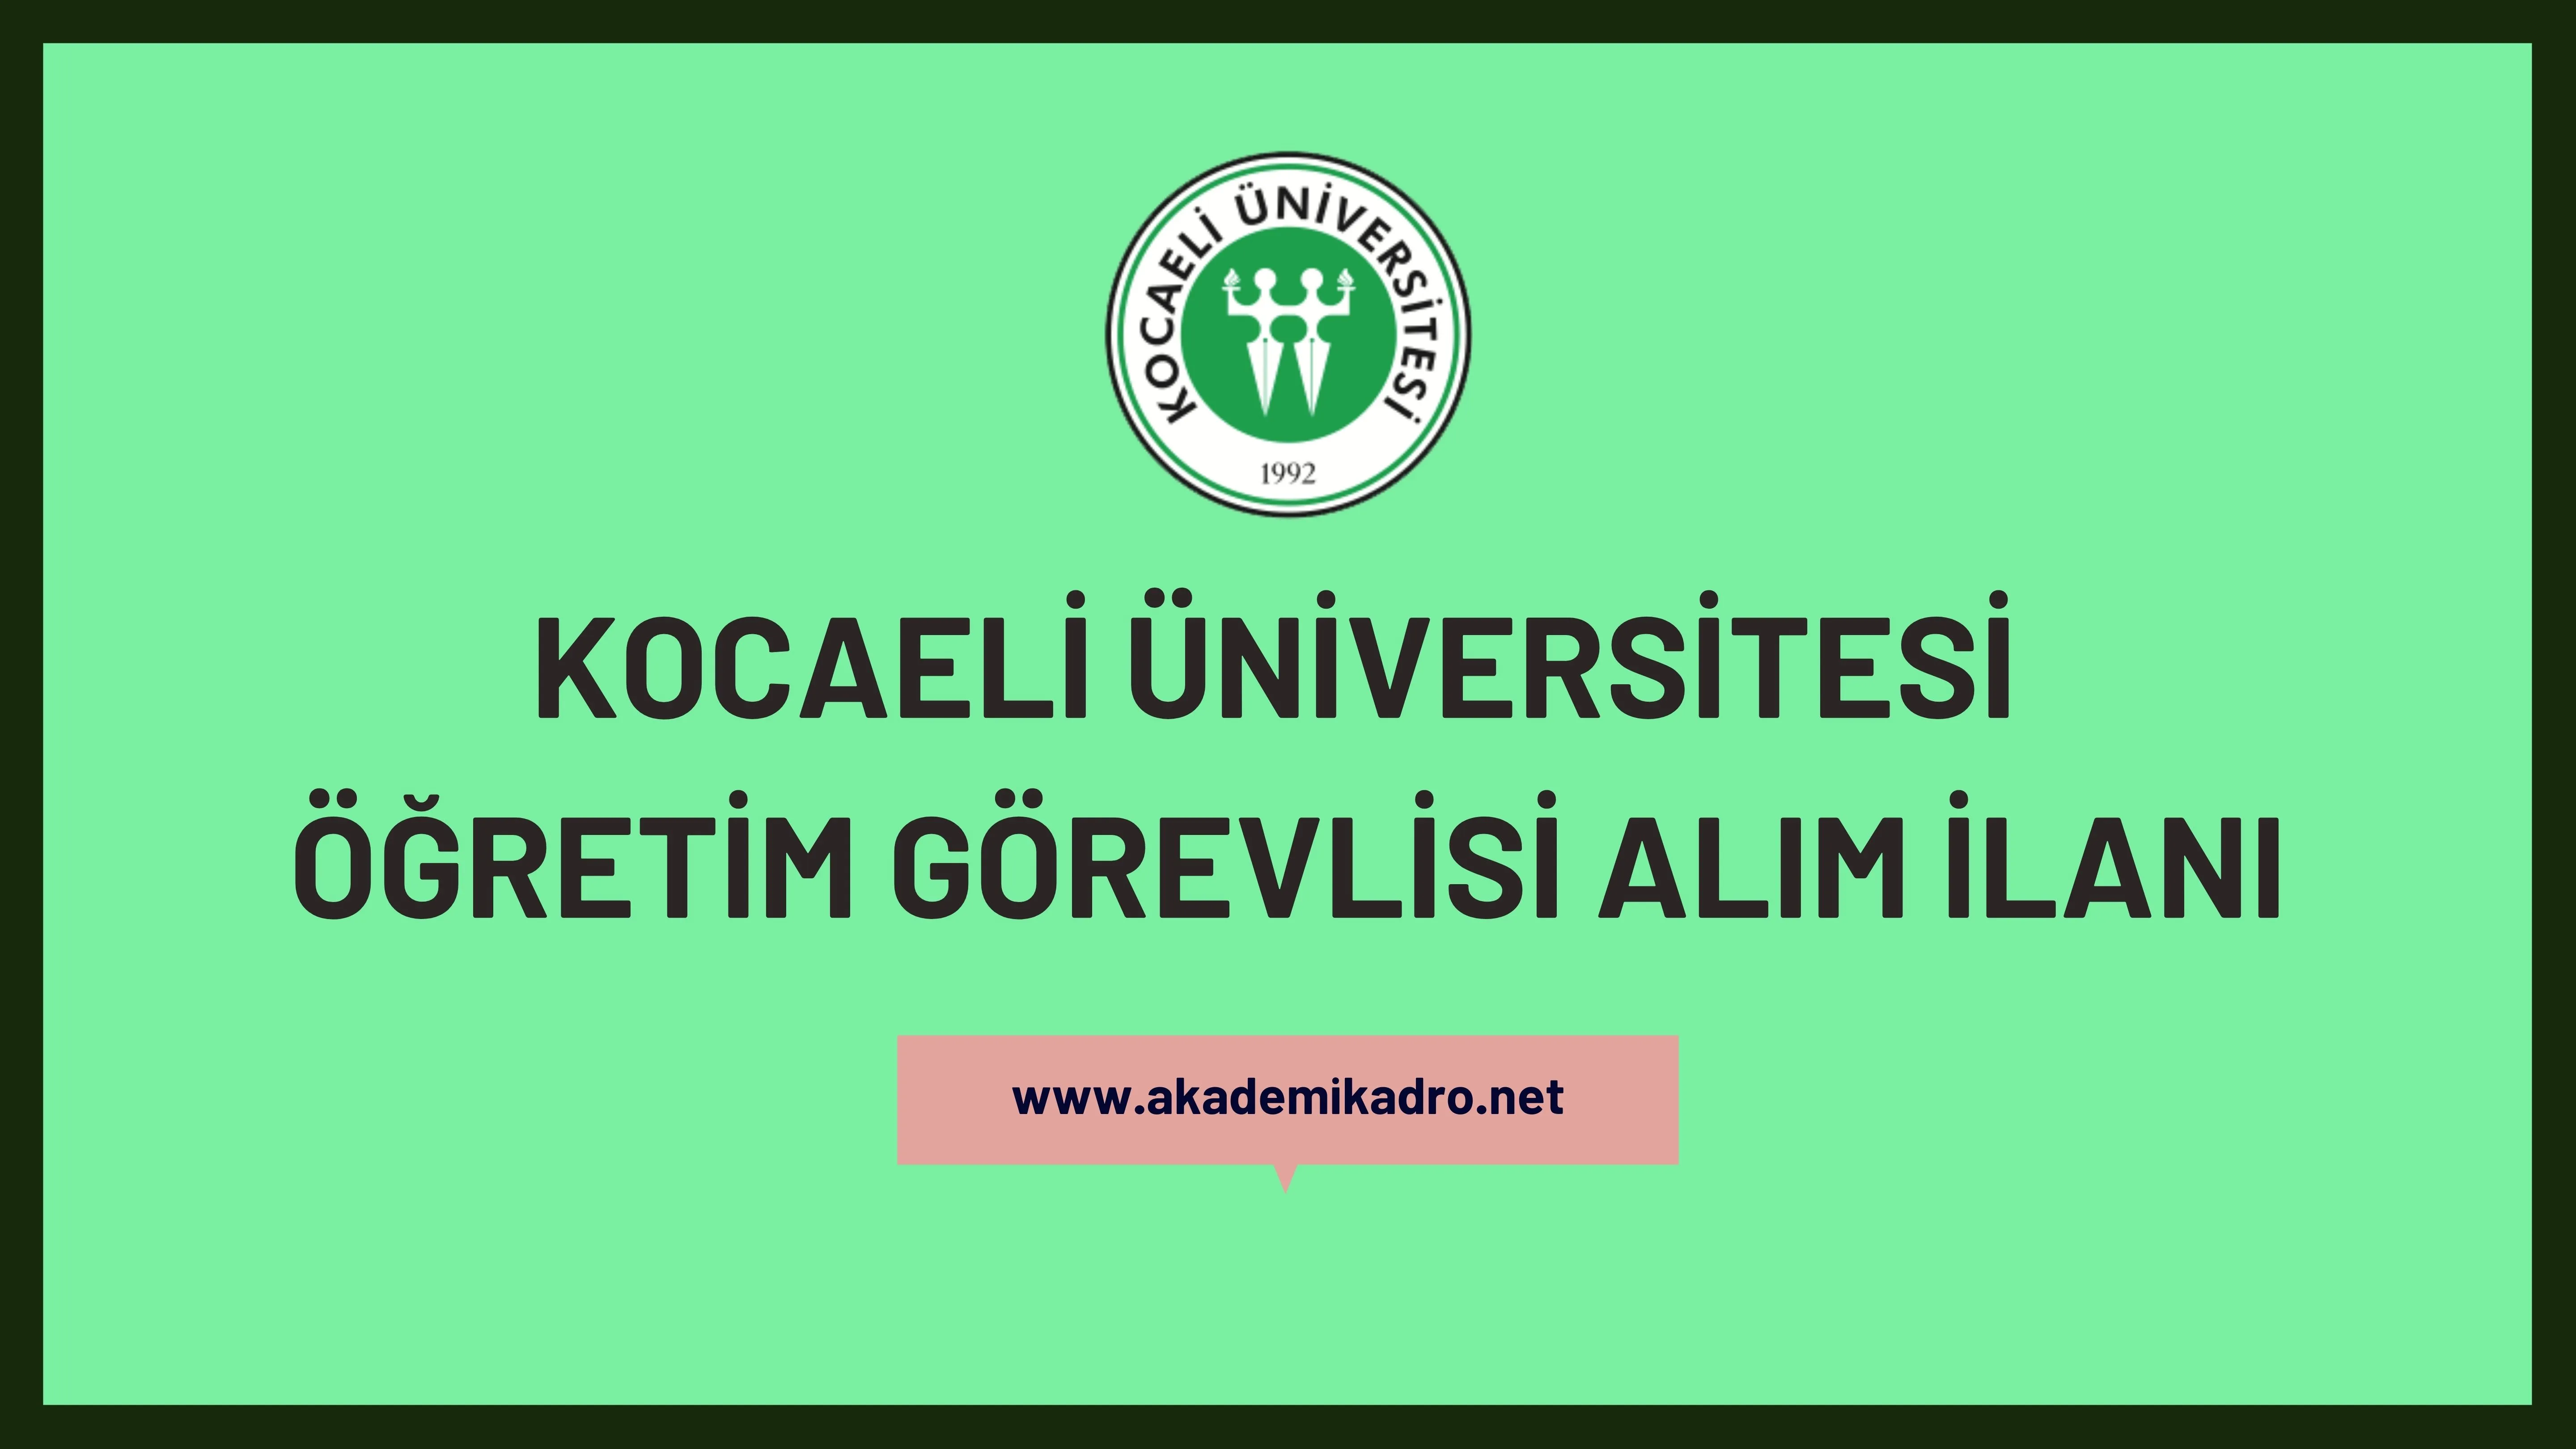 Kocaeli Üniversitesi 8 Öğretim görevlisi alacaktır. Son başvuru tarihi 13 Kasım 2023.